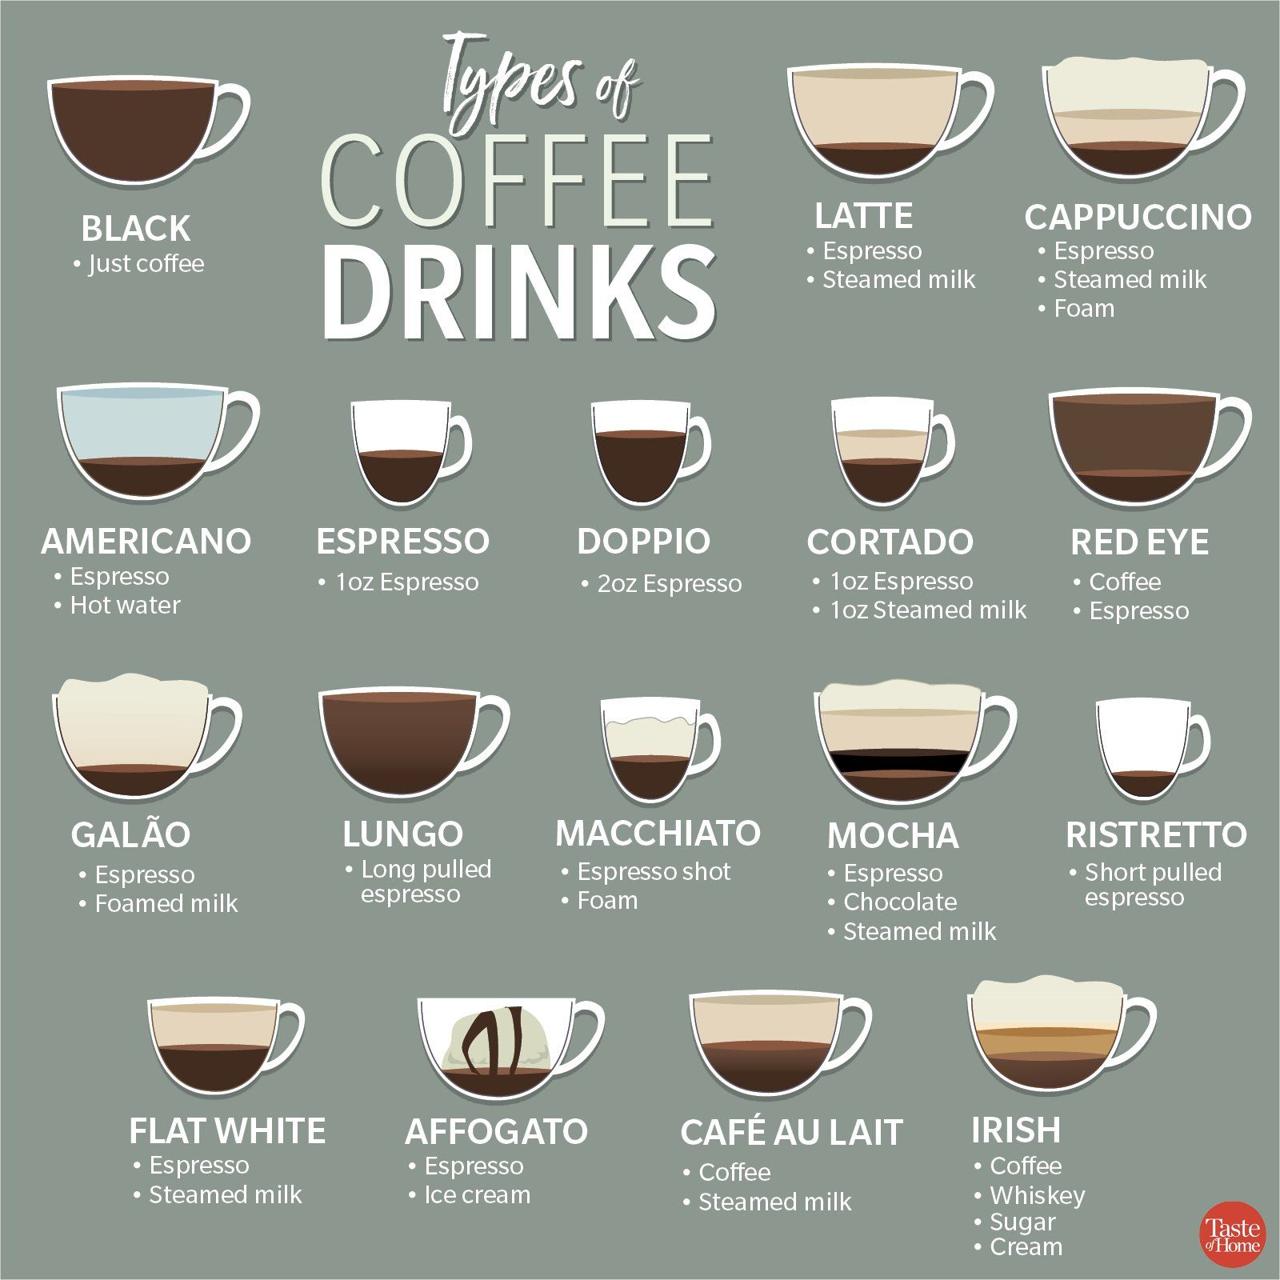 Różnice w smaku między różnymi odmianami ziaren kawy